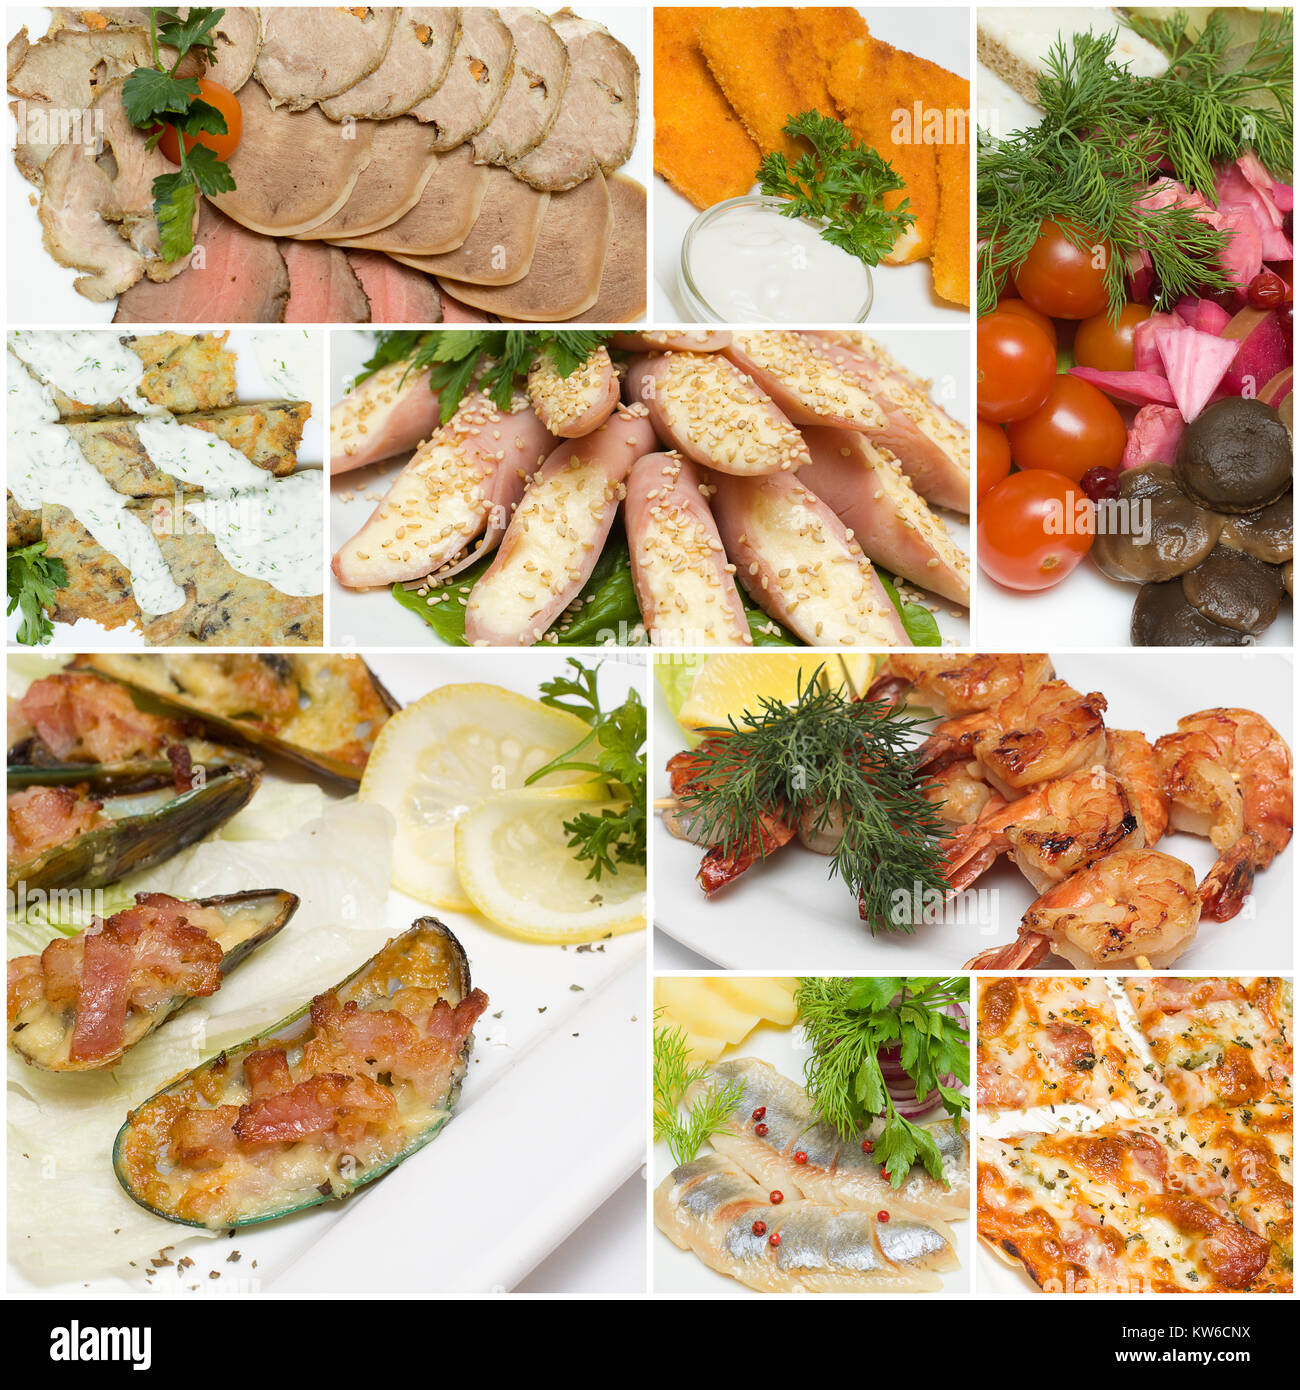 Collage des aliments - gourmet apéritif et snack au restaurant Banque D'Images